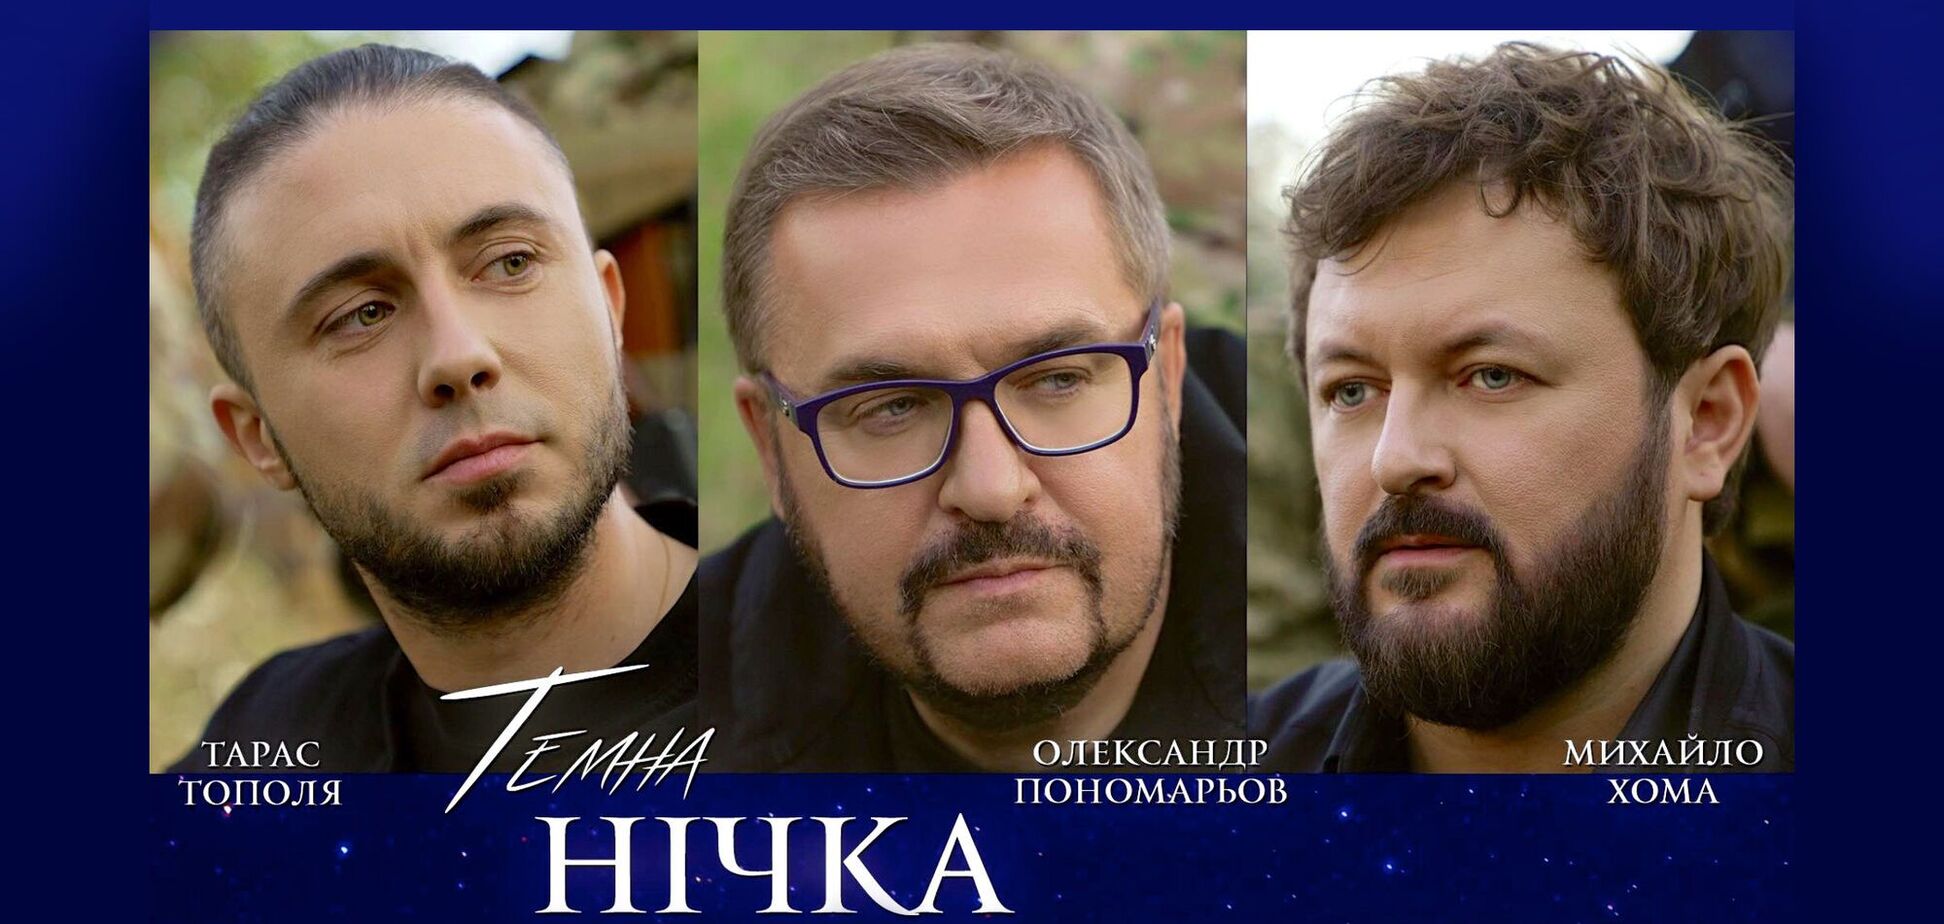 'Темна нічка': Пономарьов, Хома та Тополя презентували пісню для військових та про військових